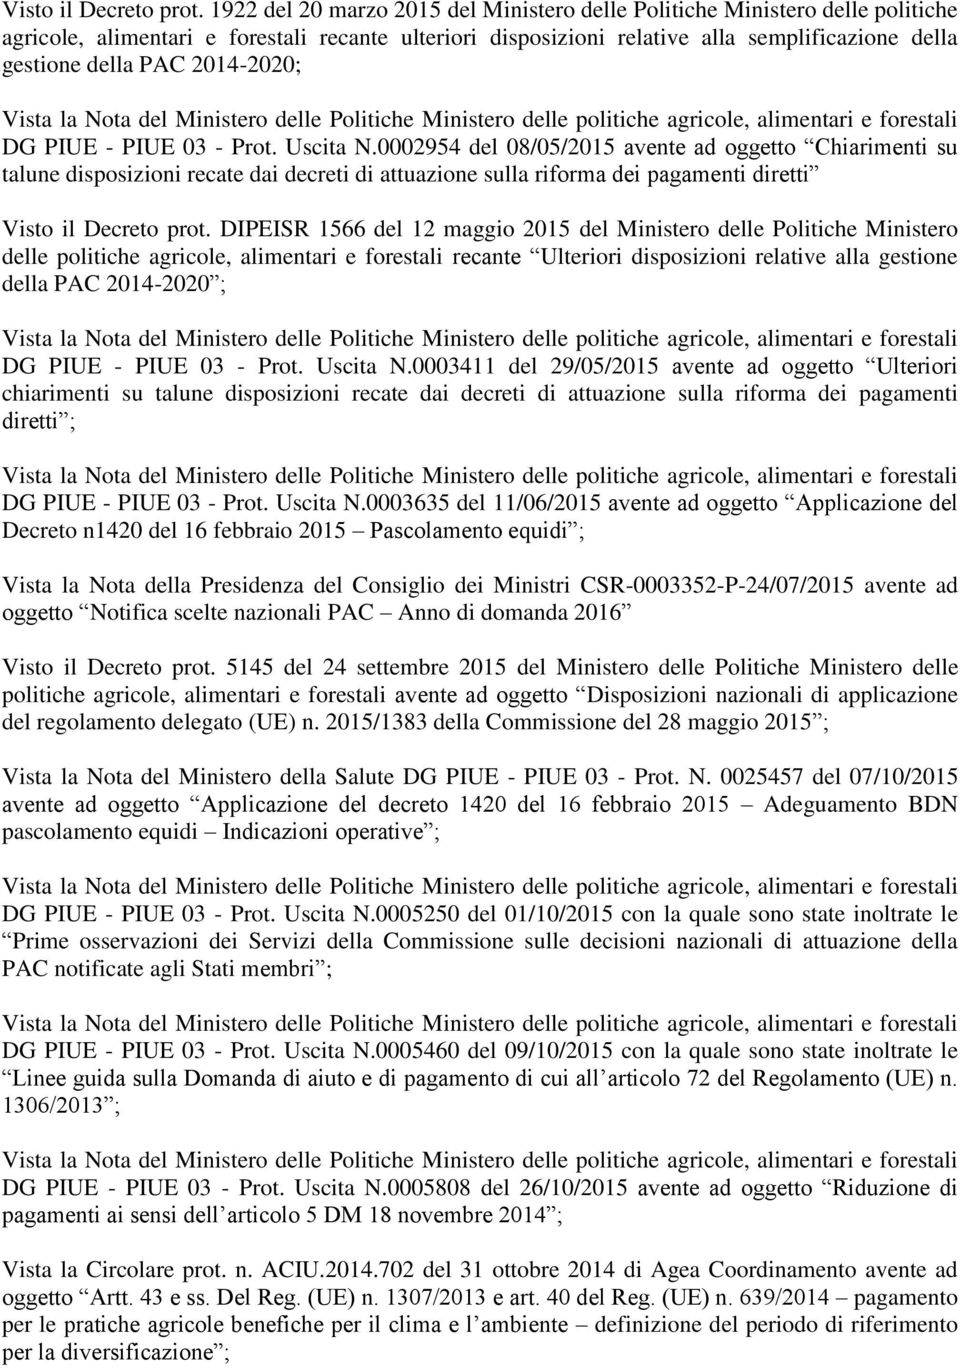 2014-2020; DG PIUE - PIUE 03 - Prot. Uscita N.